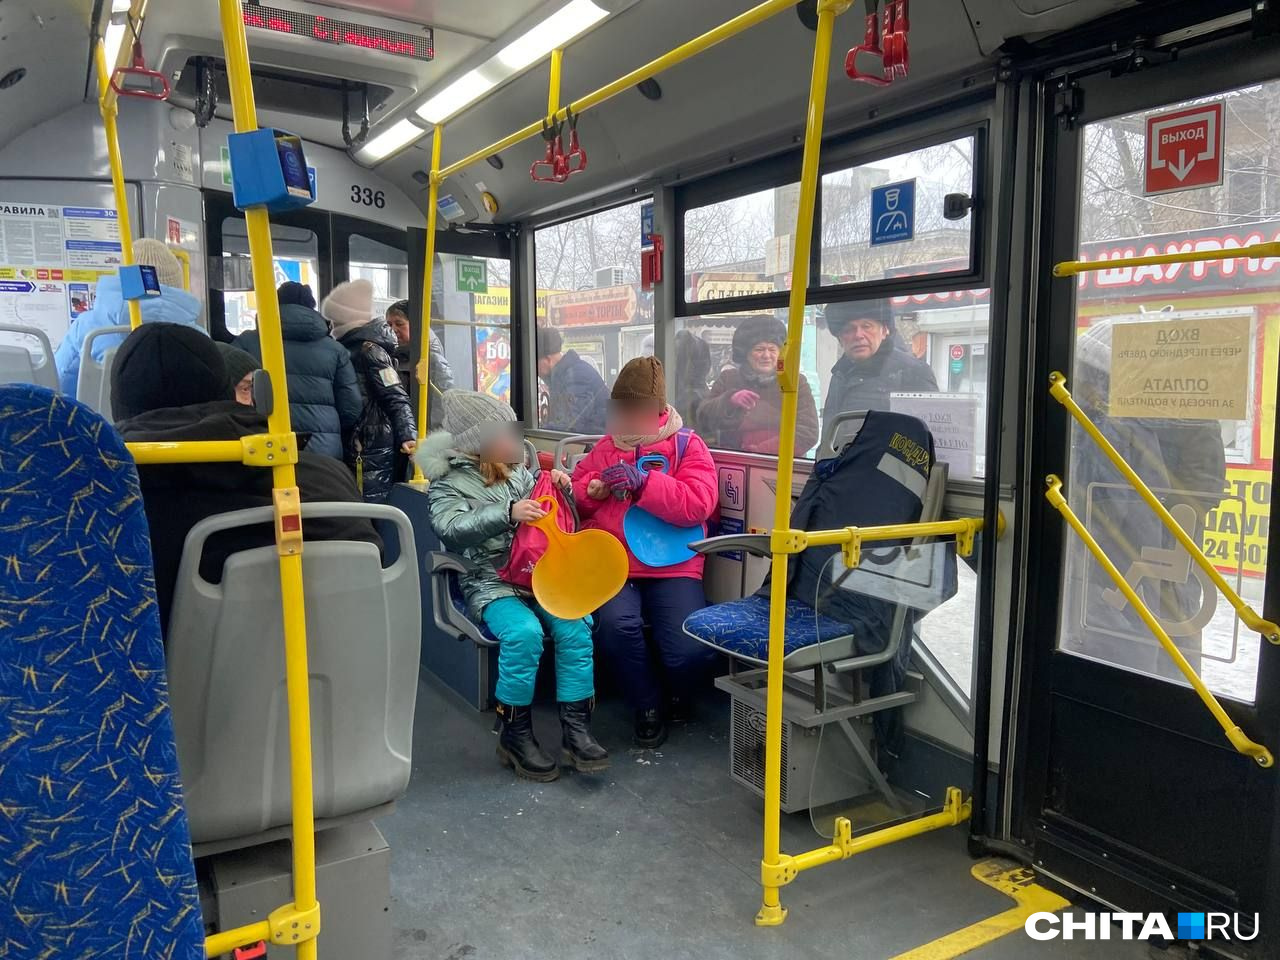 Троллейбусы без кондукторов в Чите стали раздражать горожан